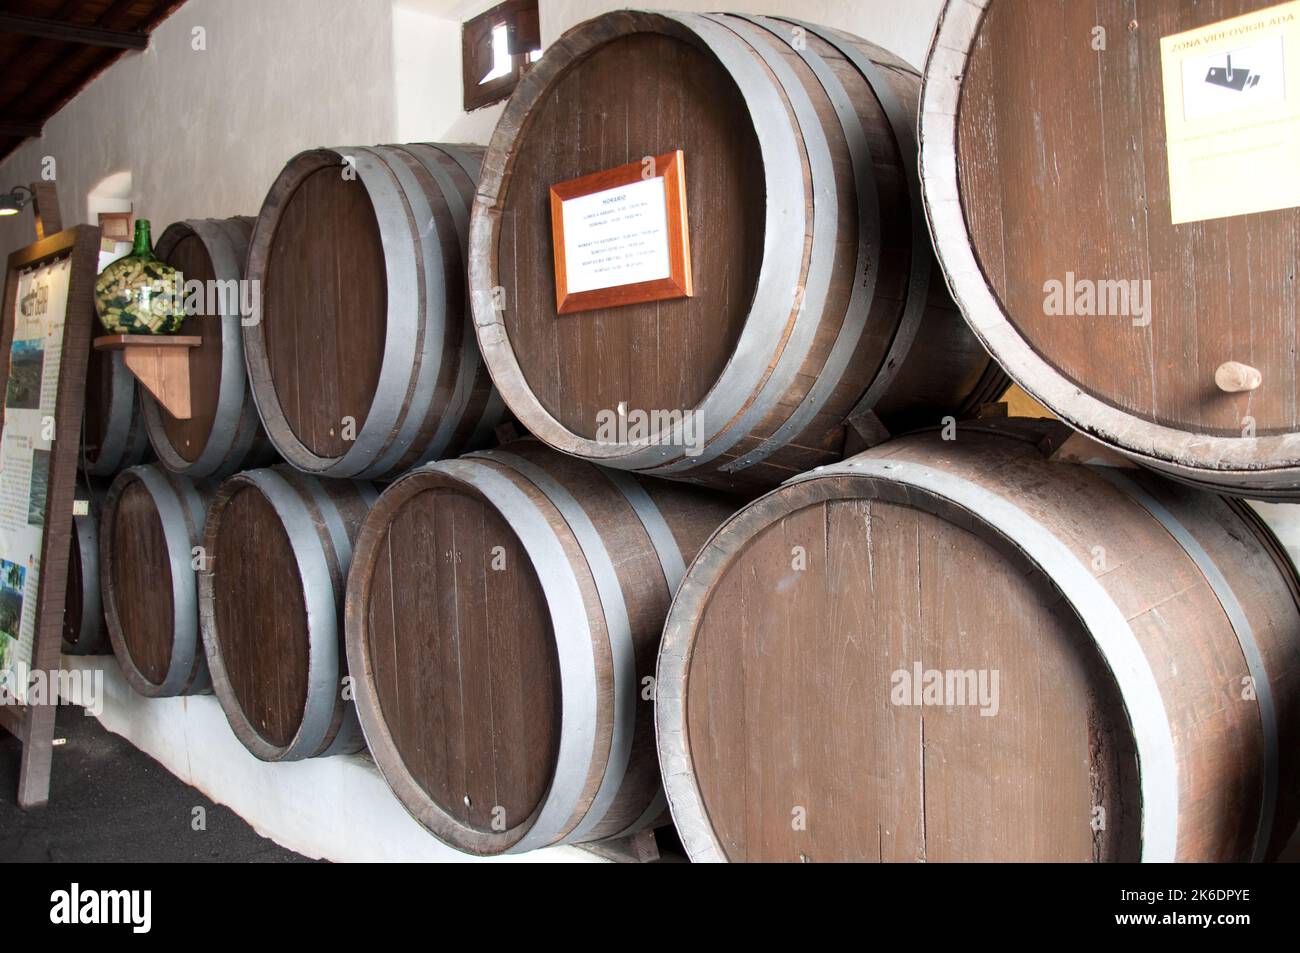 Wine vats, La Geria Vinery, Lanzarote, Canary Islands Stock Photo